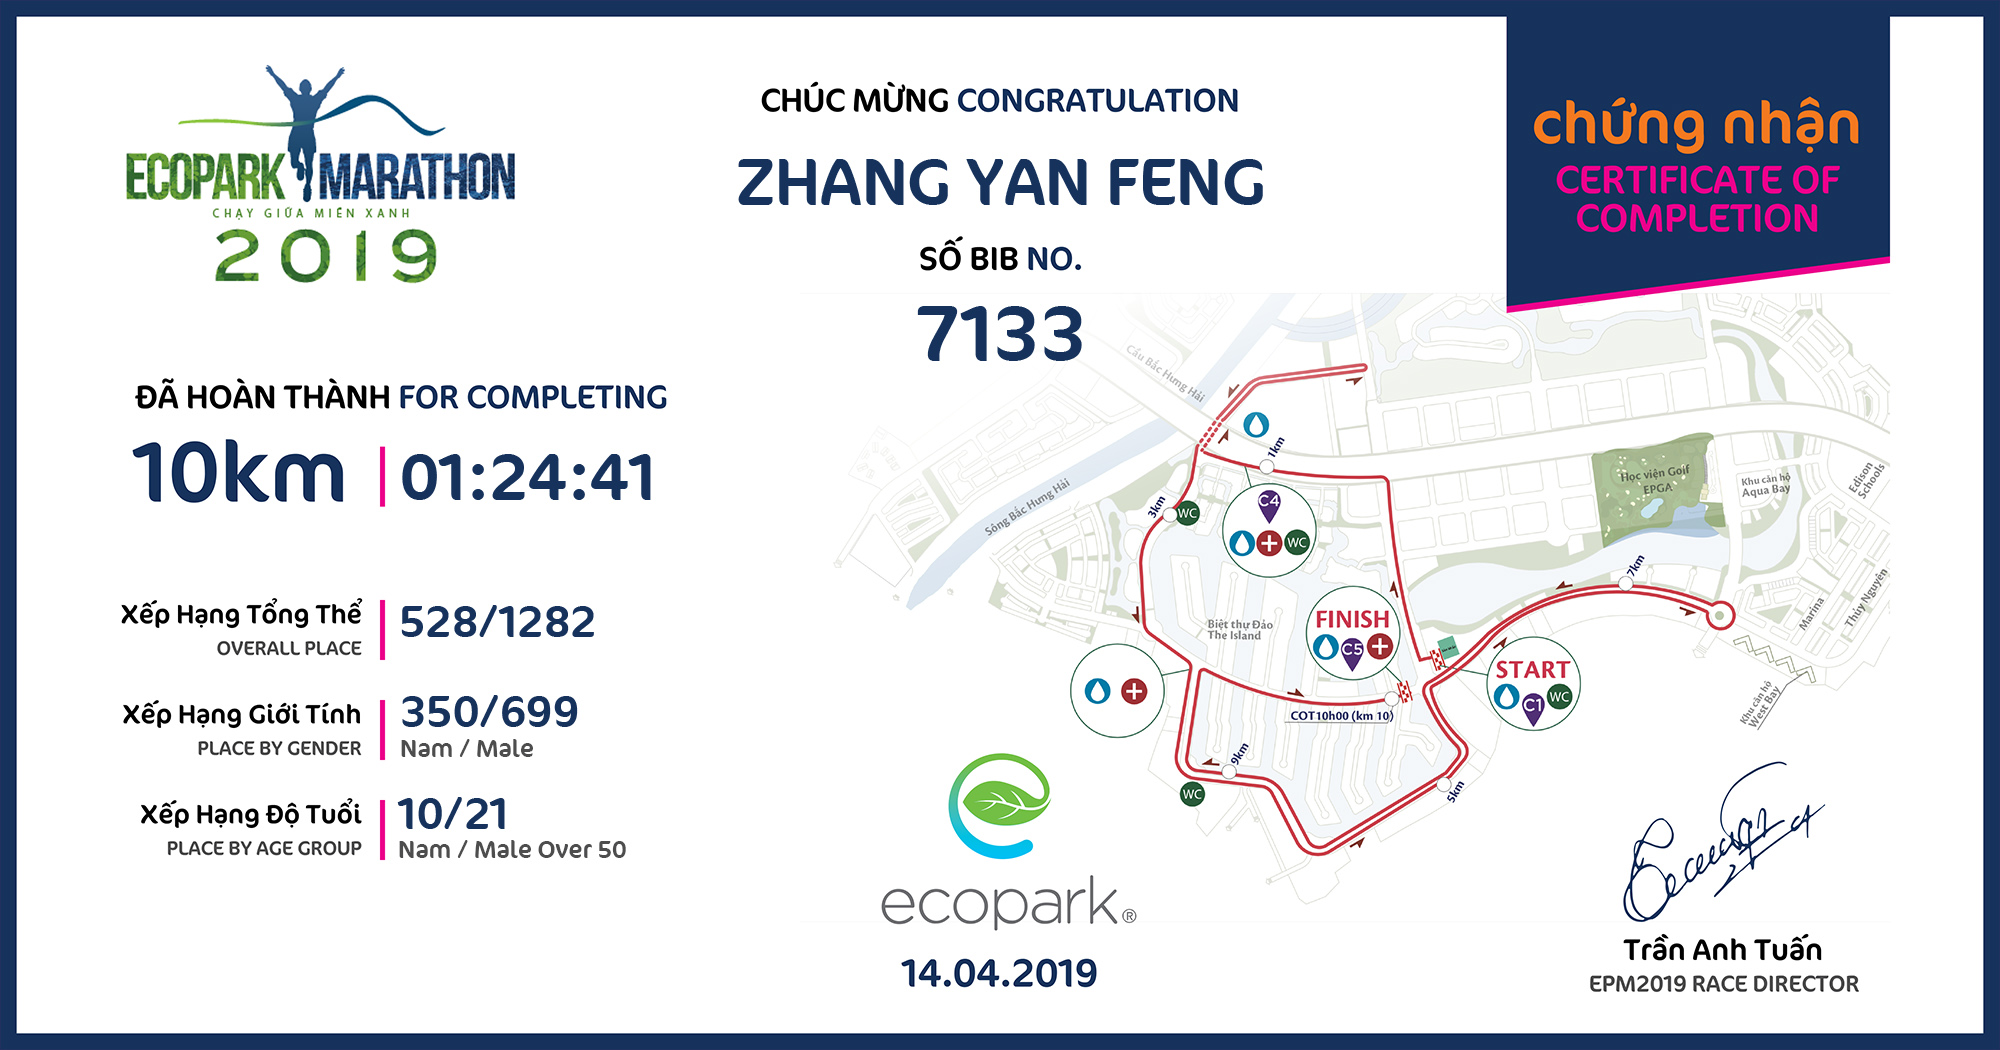 7133 - ZHANG YAN FENG